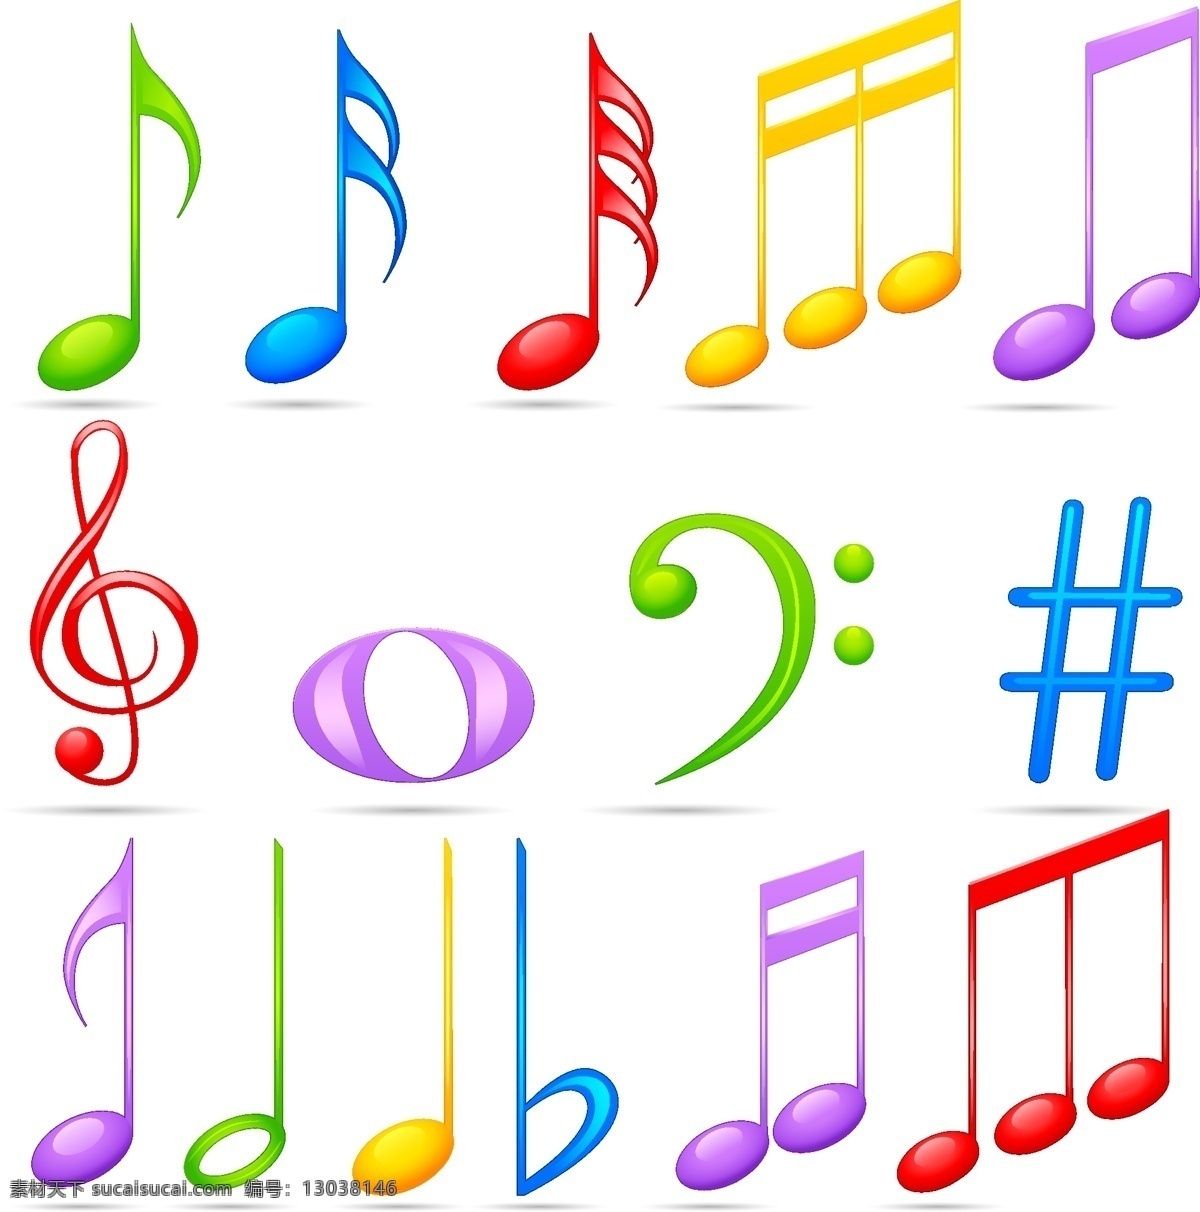 音符 音符剪影 音乐符号 音符矢量素材 音符模板下载 跃动的音符 音符符号 音乐 舞蹈音乐 文化艺术 矢量